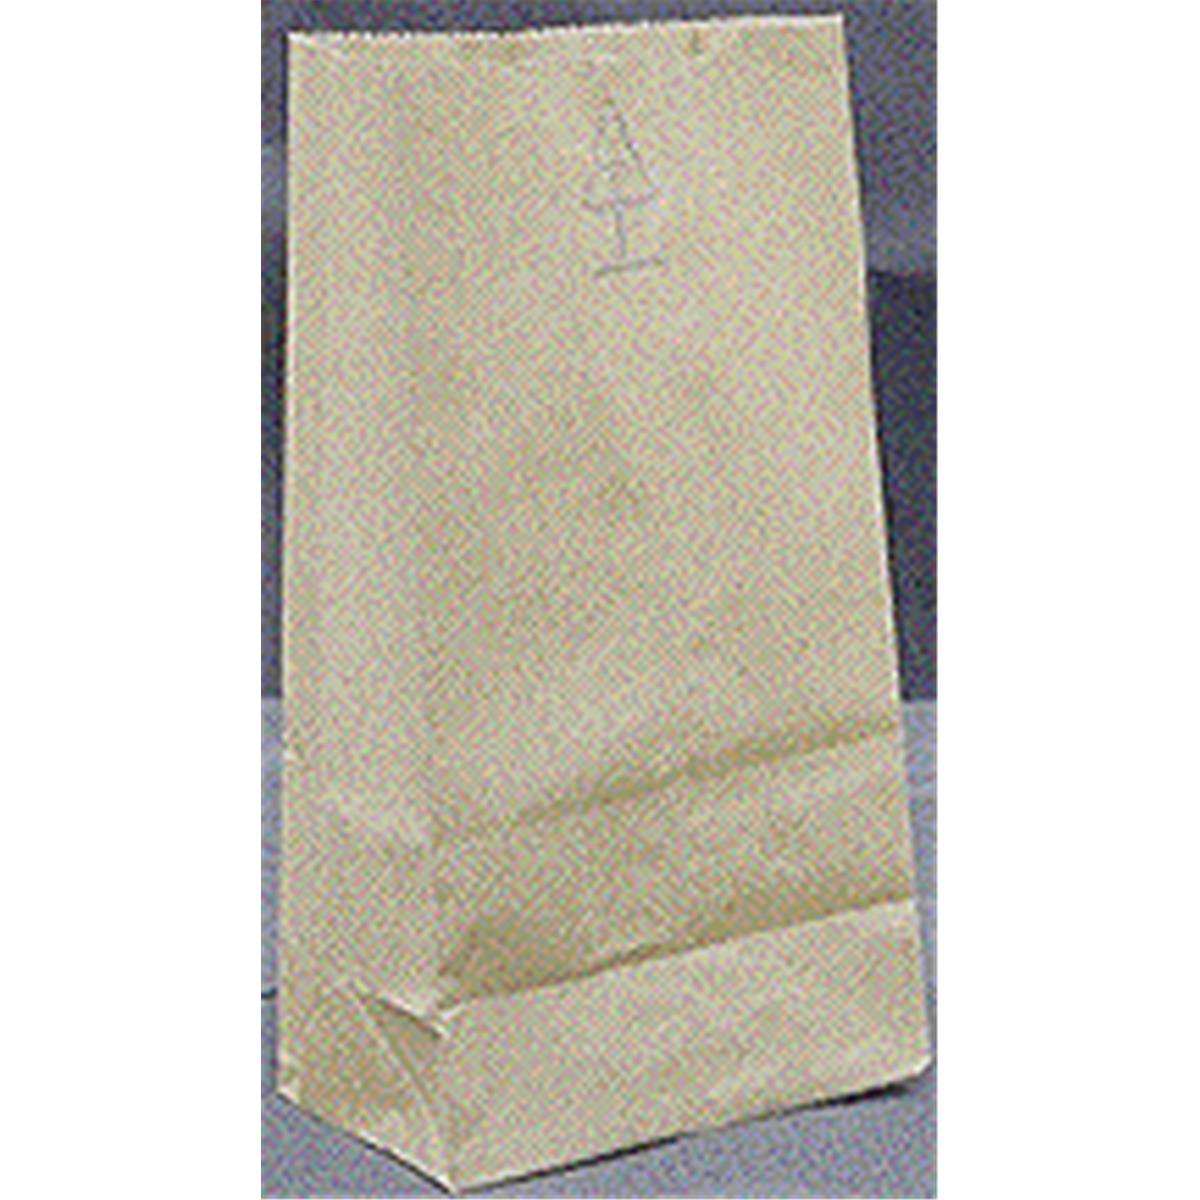 16 Lbs Grocery Bags, Brown Kraft Paper - Pack Of 500